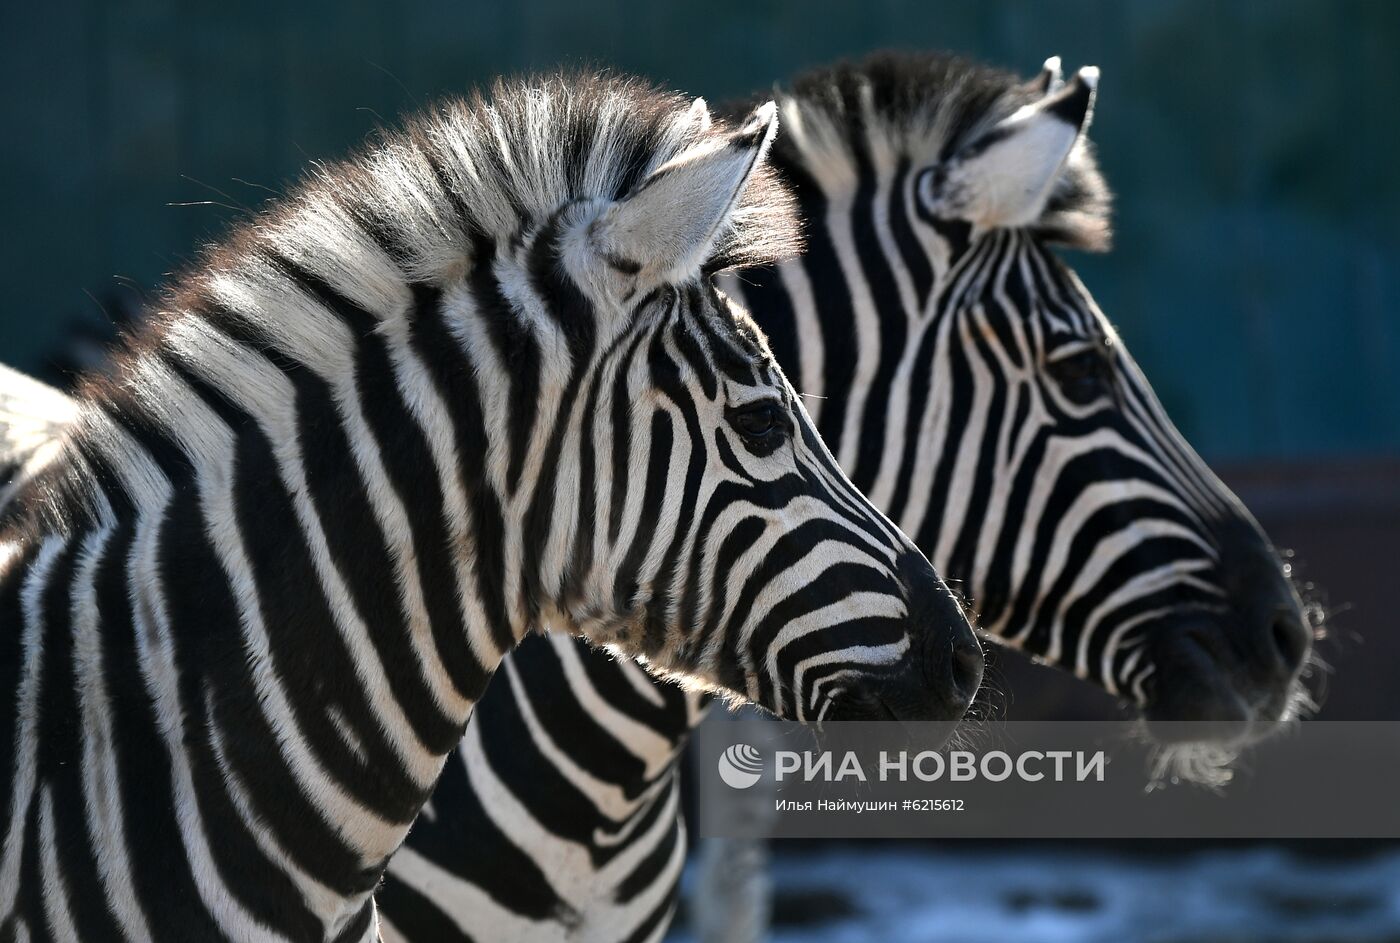 Работа парка флоры и фауны "Роев ручей" в Красноярске